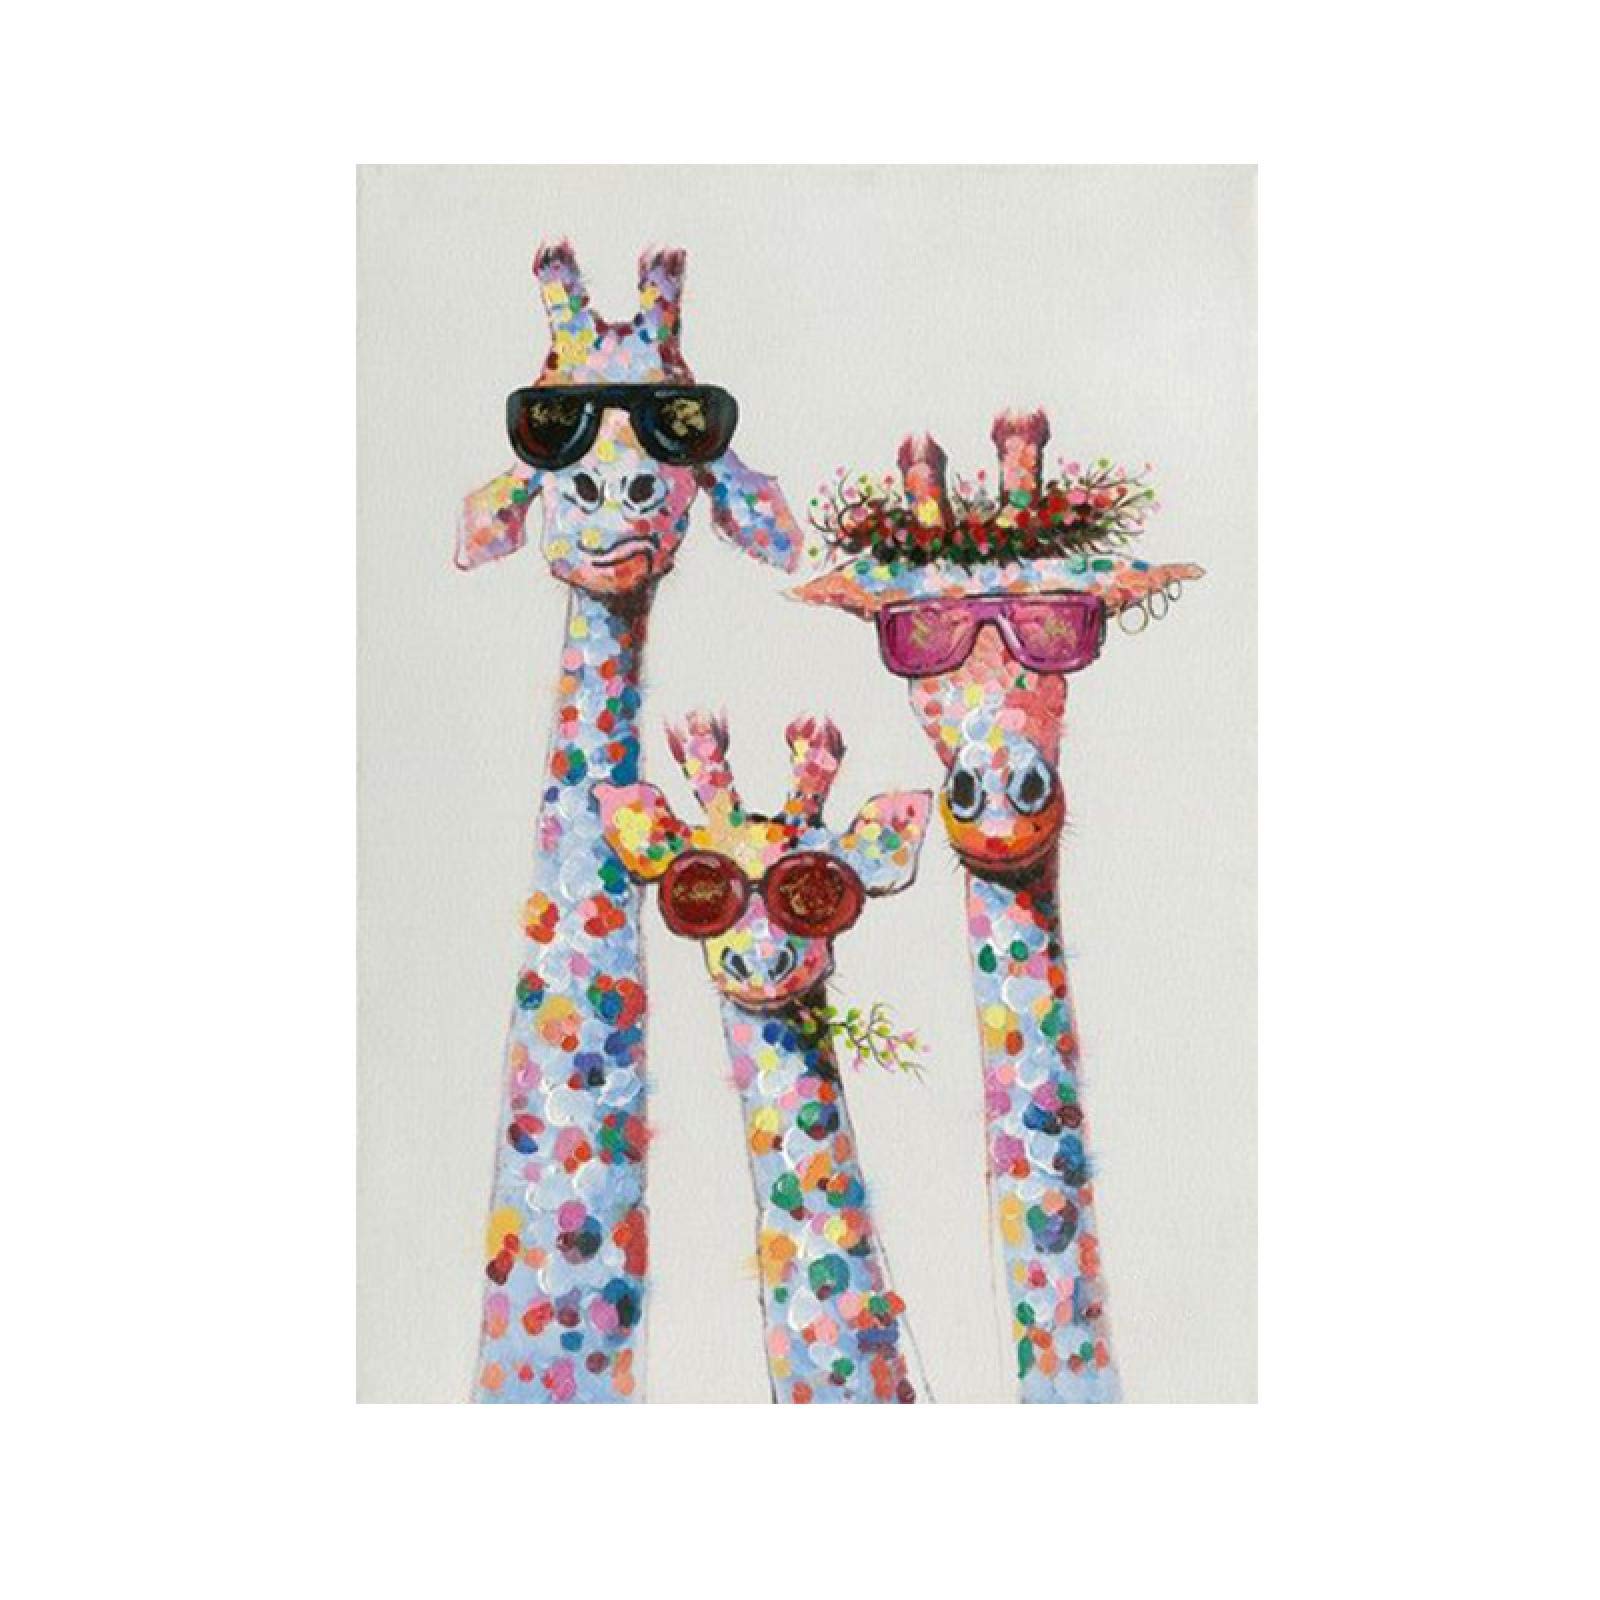 Leinwand Wandkunst Bunte Tier Giraffe Familie mit Brille Malerei Poster und Drucke Bilder Wohnzimmer Dekor 60x90cm / 23,6"x 35,4" Rahmenlos